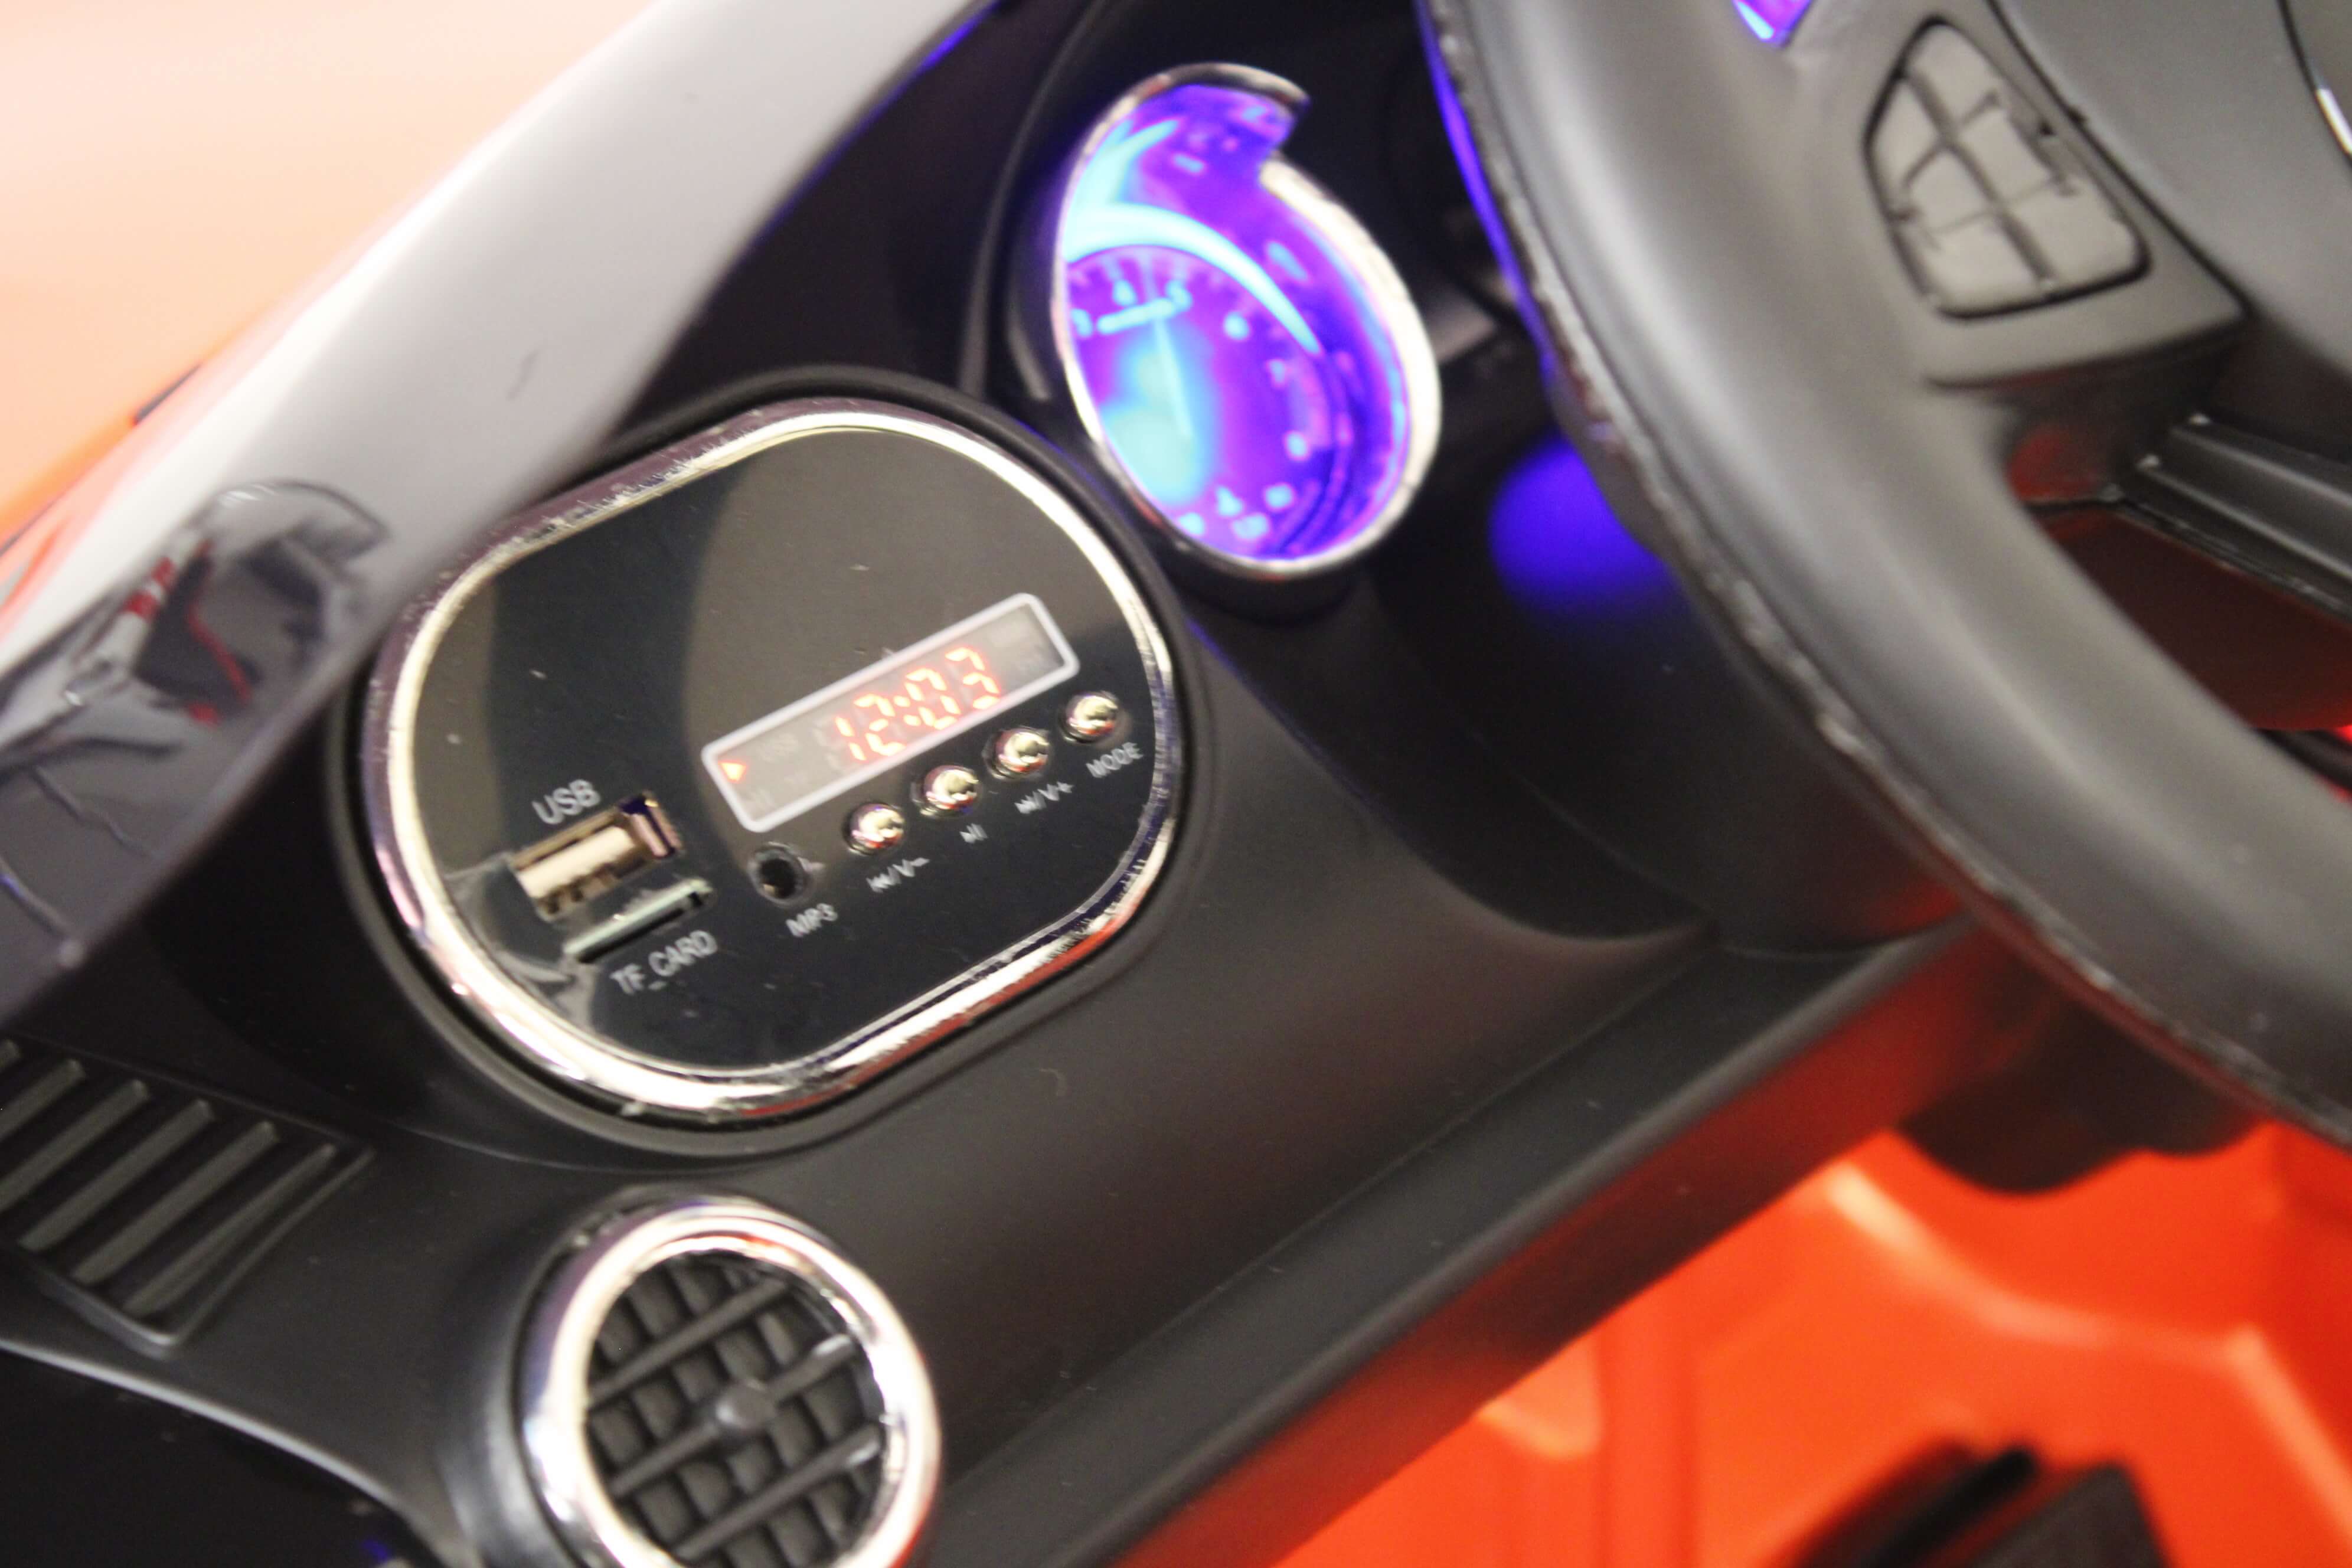 Электромобиль MERCEDES-BENZ AMG GT (Лицензионный) с пультом (Синий глянец) o008oo